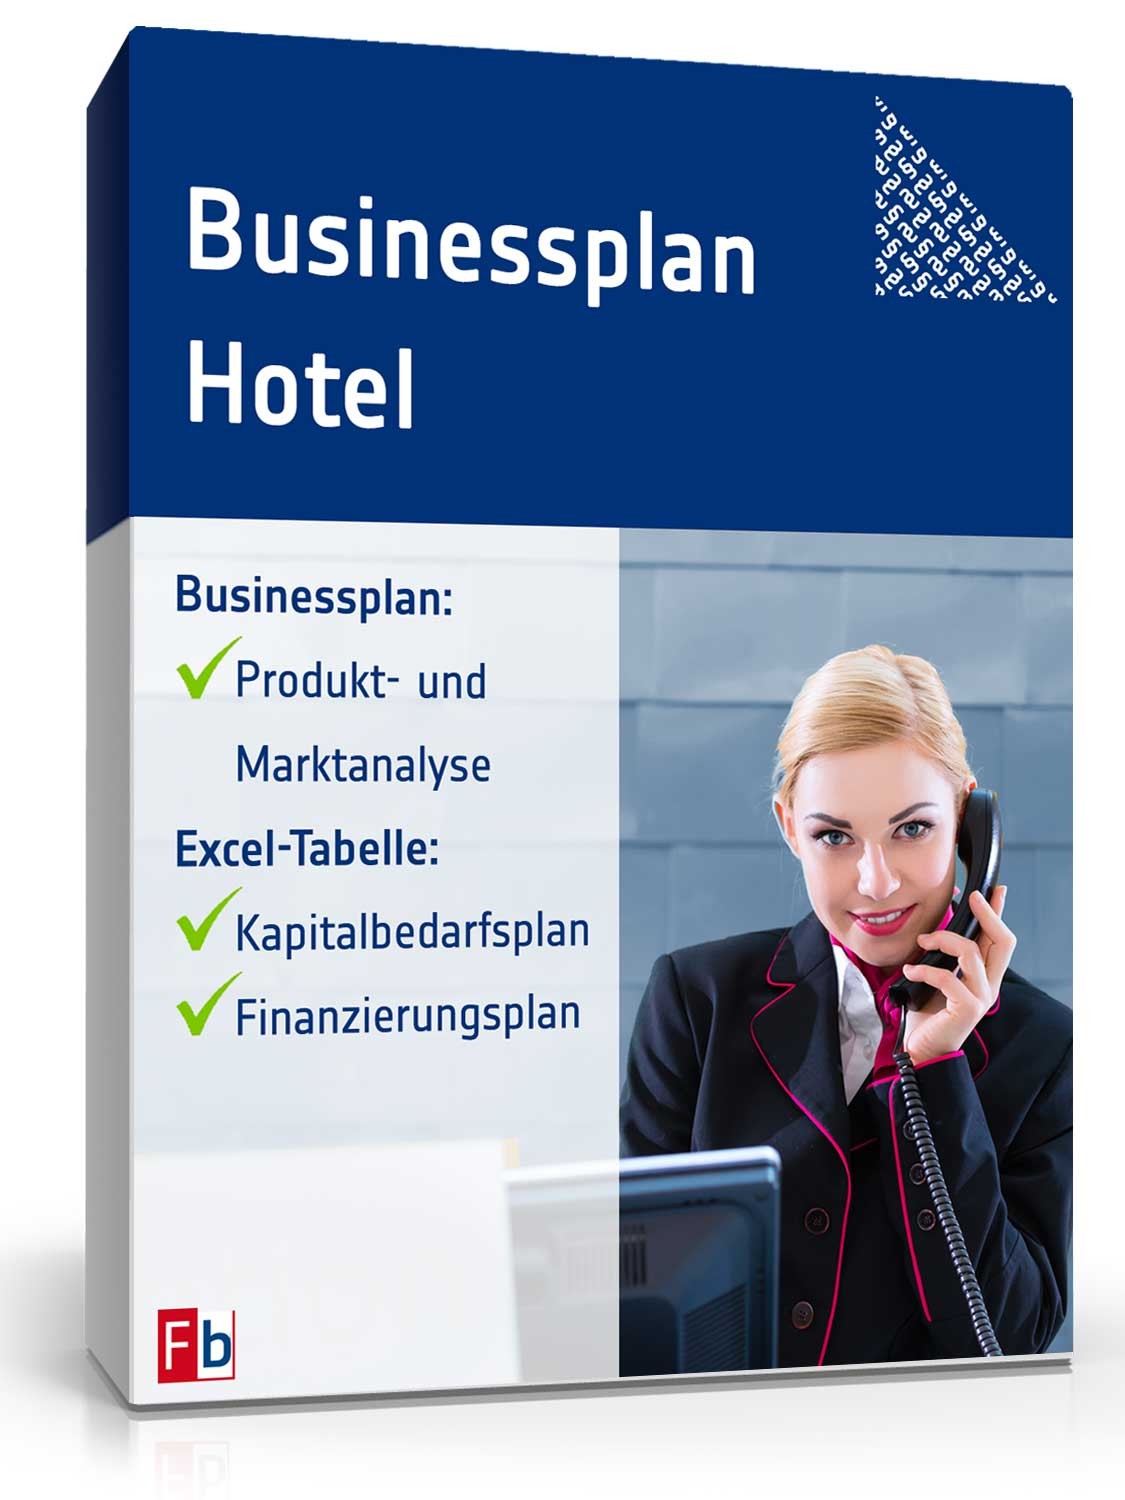 Hauptbild des Produkts: Businessplan Hotel